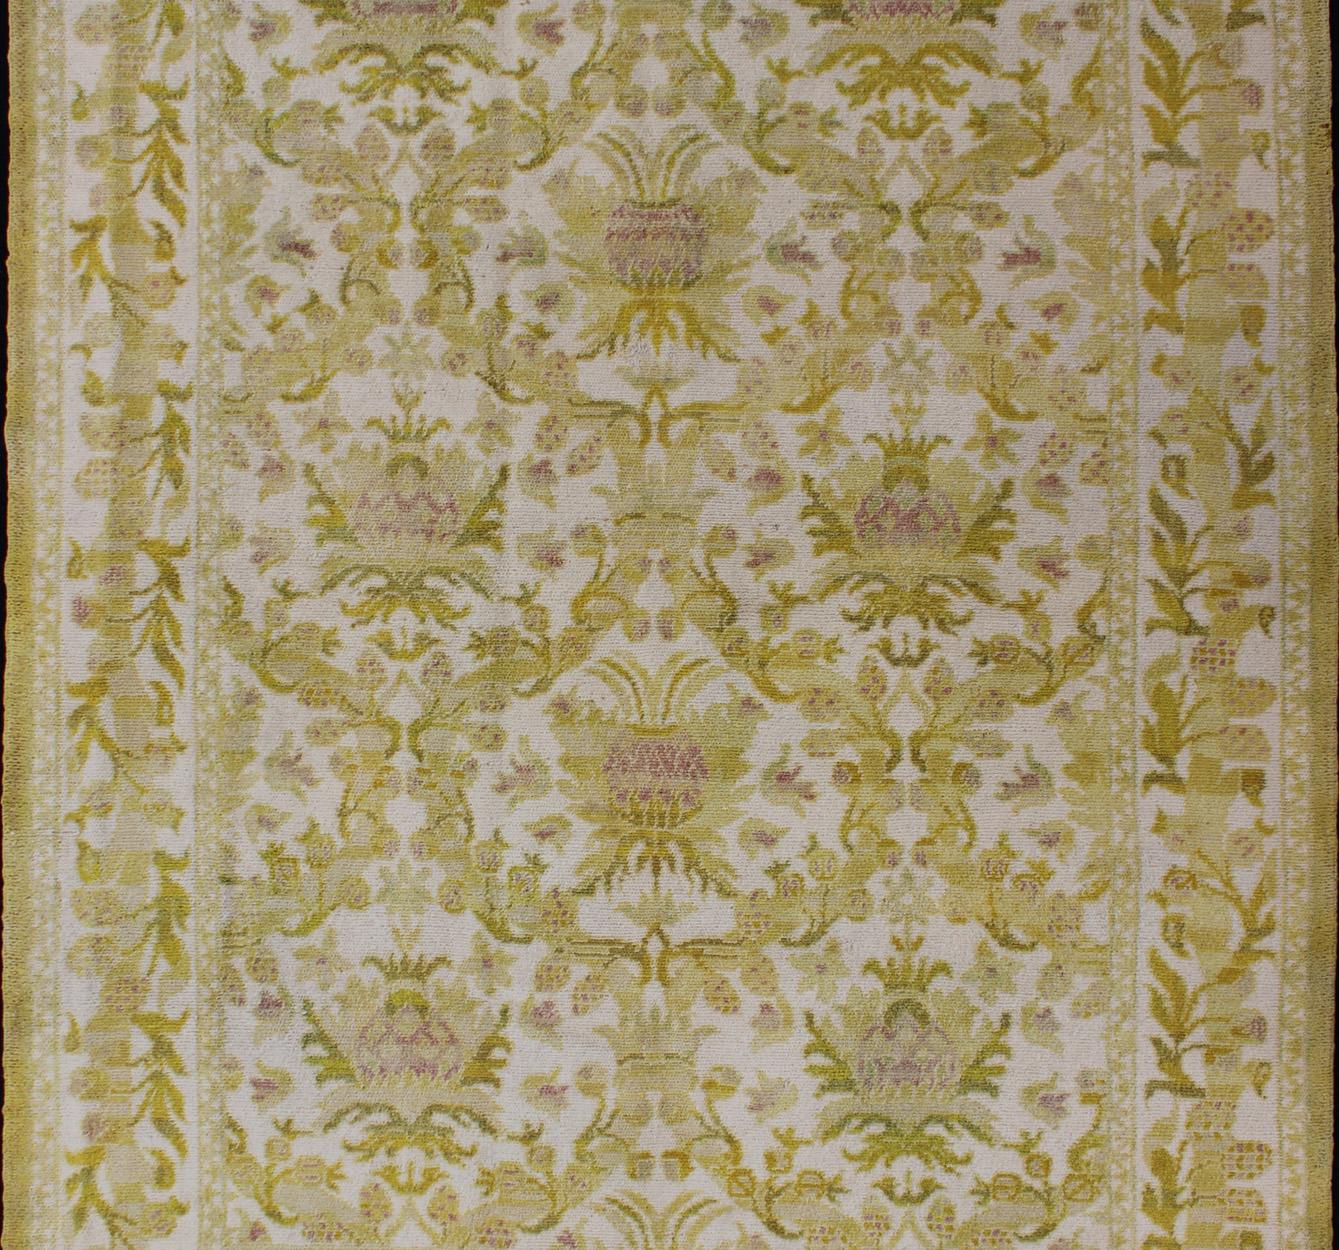 golden rug